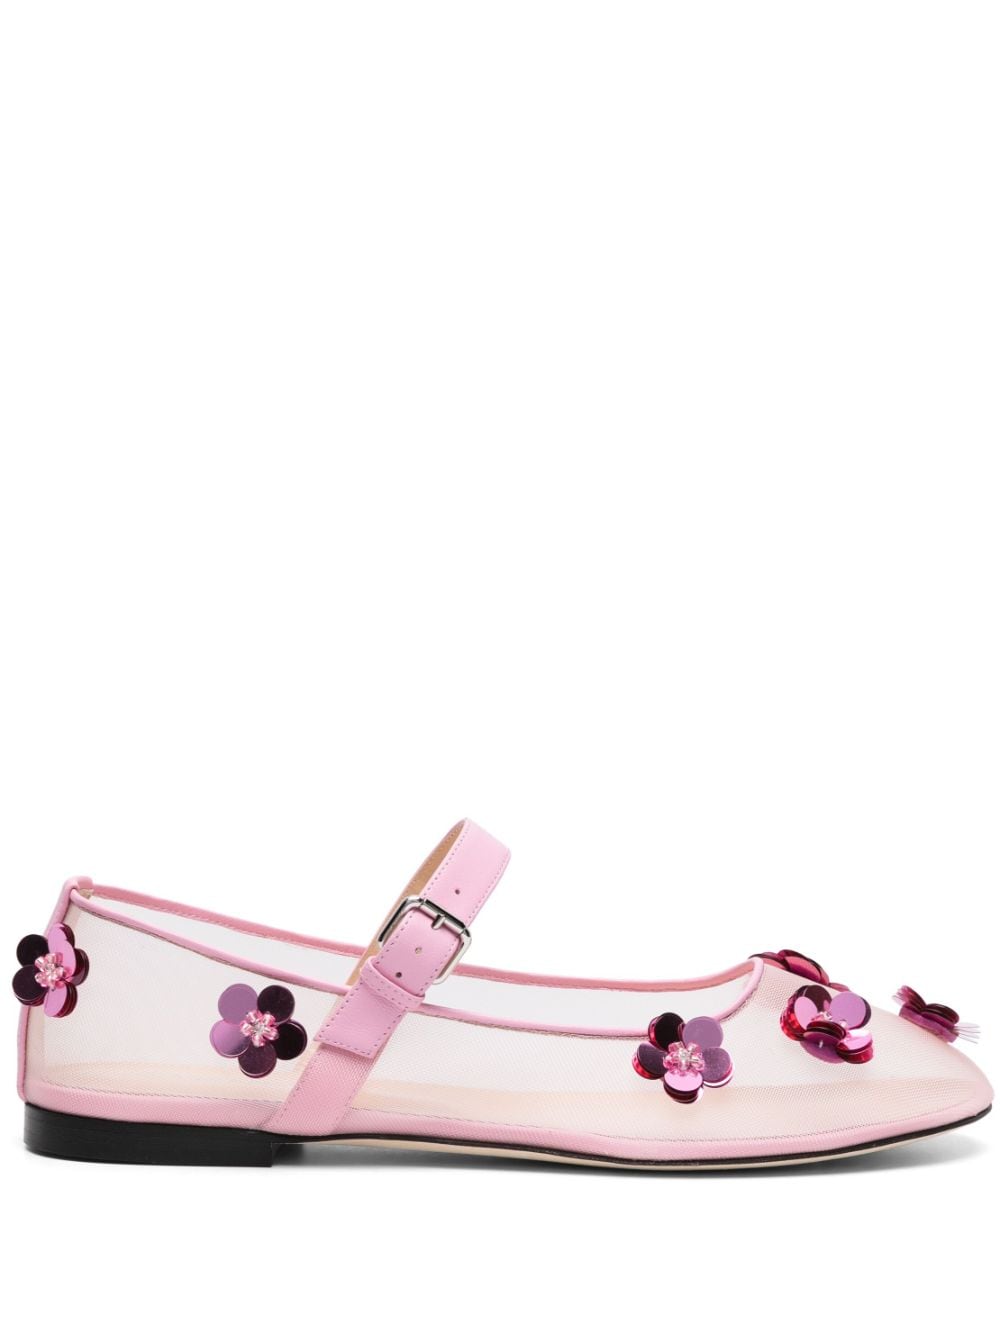 MACH & MACH Mesh Flowers ballerina shoes - Pink von MACH & MACH